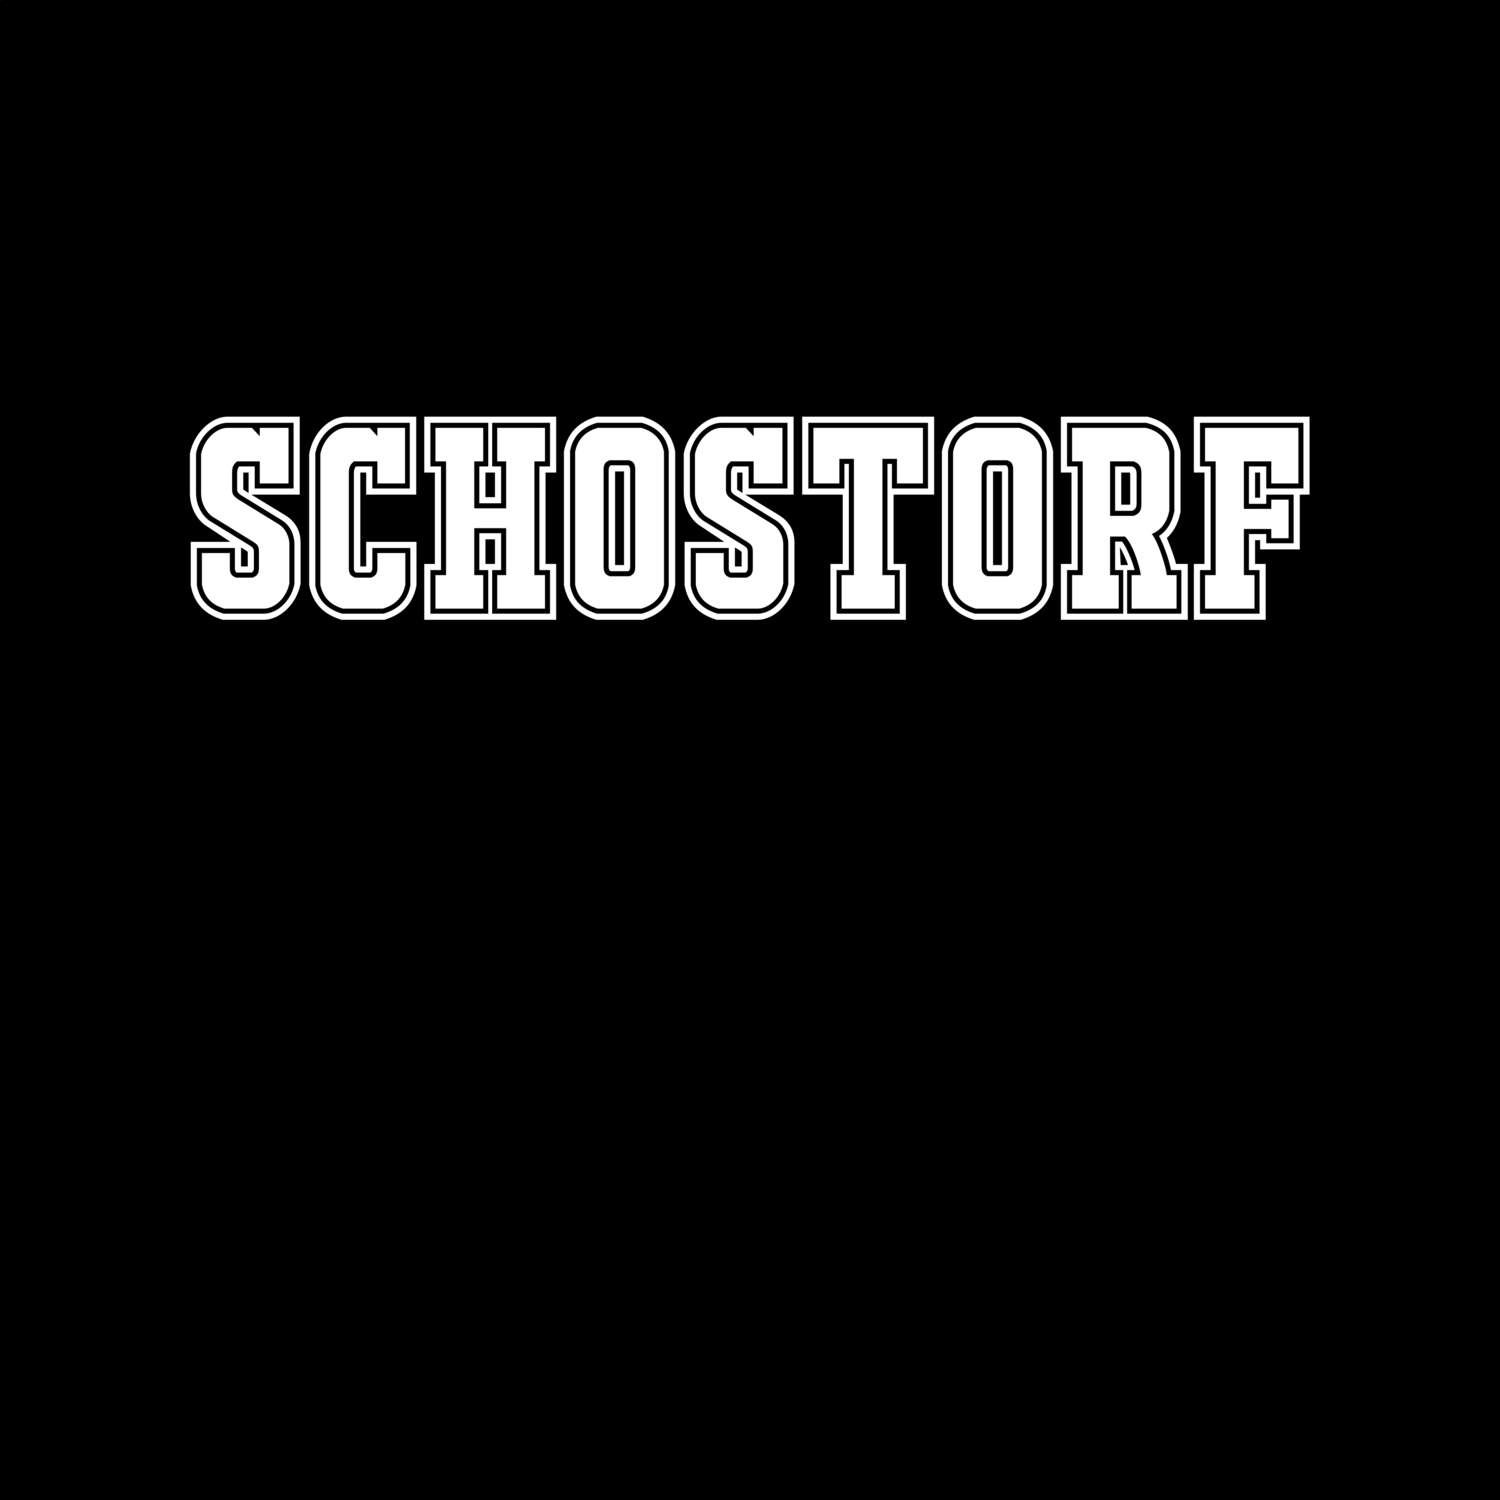 Schostorf T-Shirt »Classic«